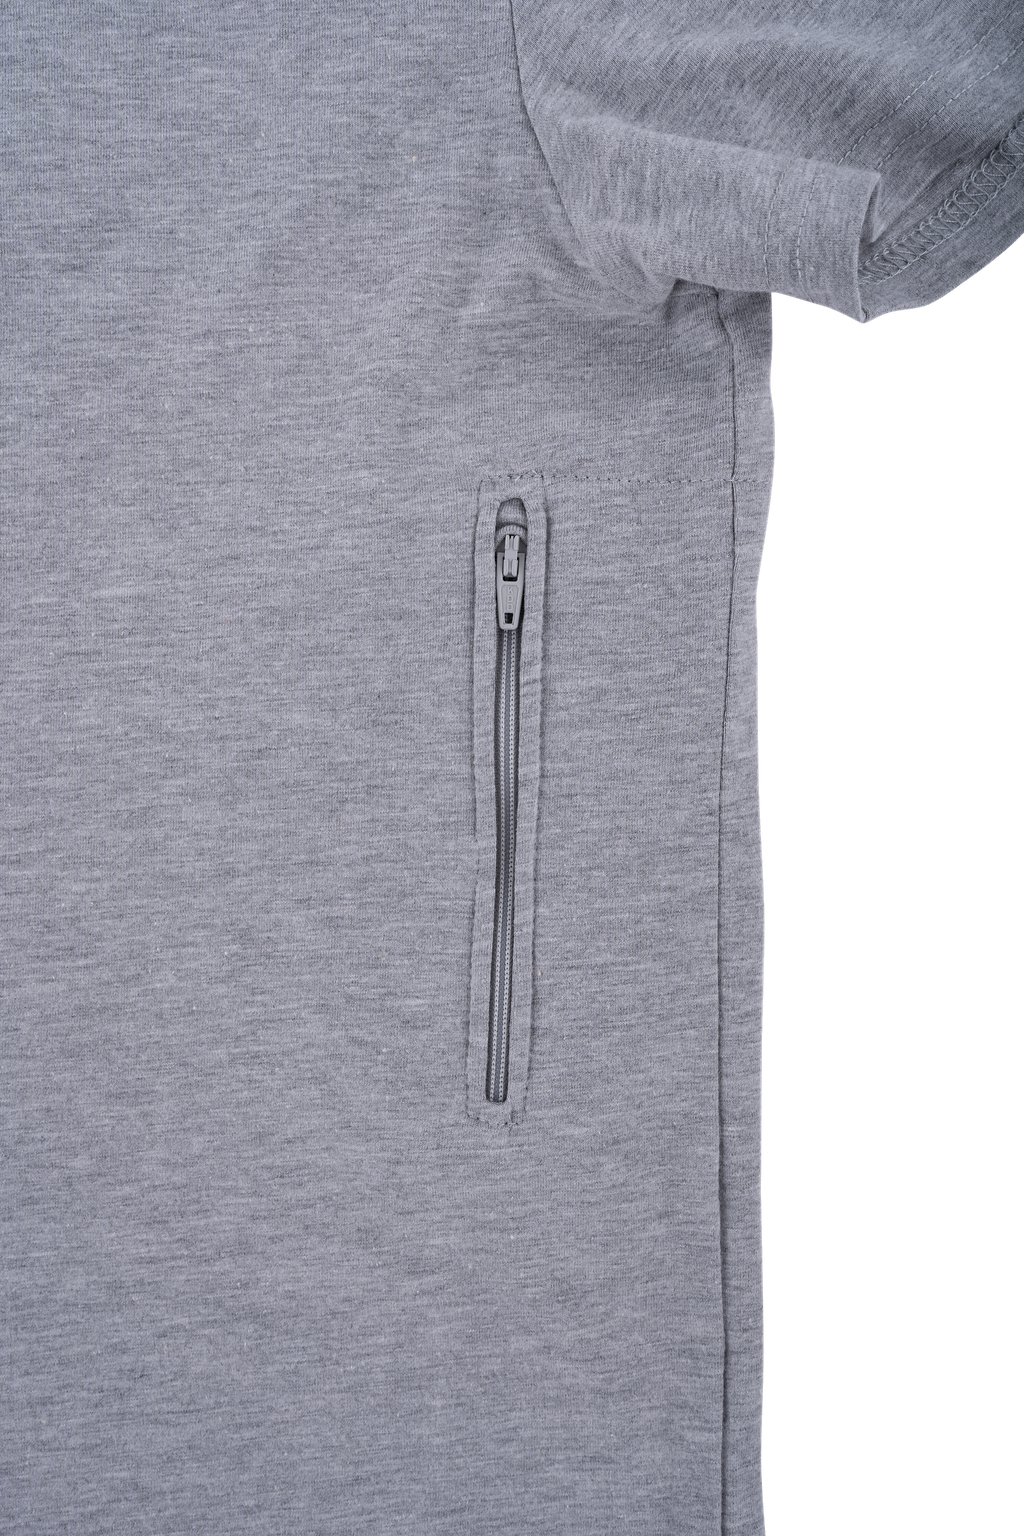 V-Neck T-shirt with 2 Hidden Pockets - PickPocket Proof